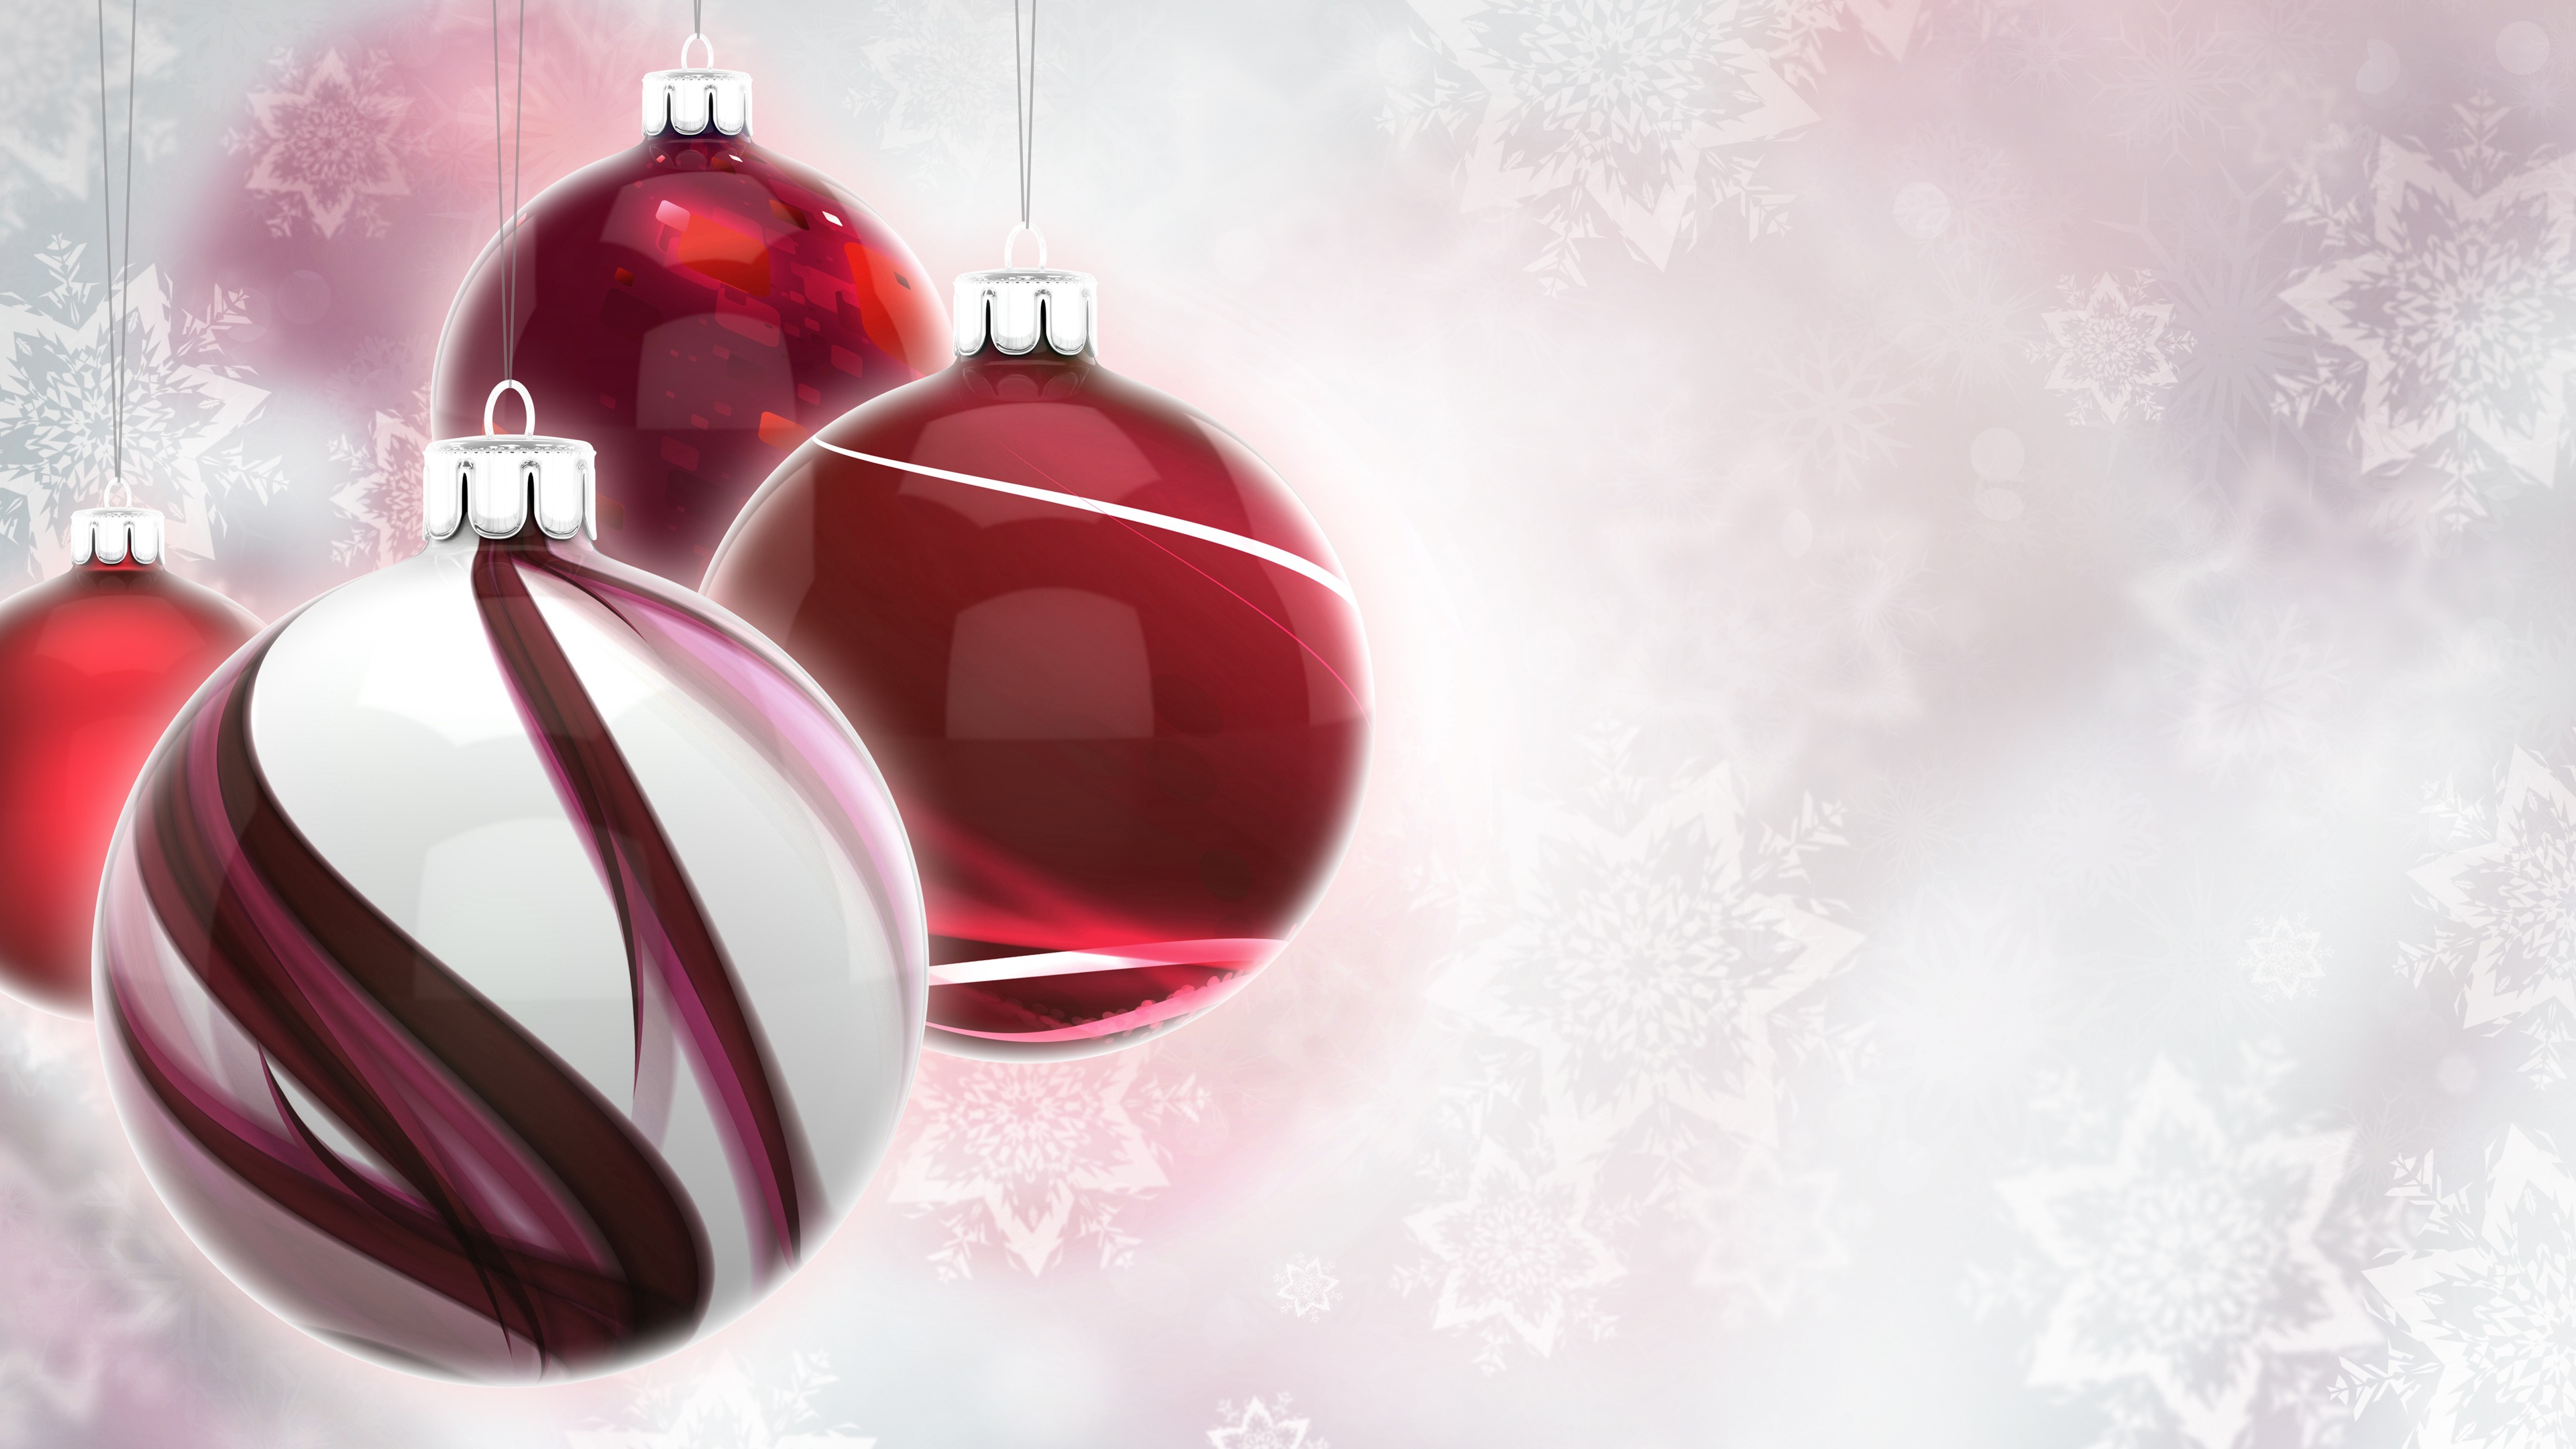 Christmas Ornaments, Vectors, Digital Art, Snow Flakes Wallpaper